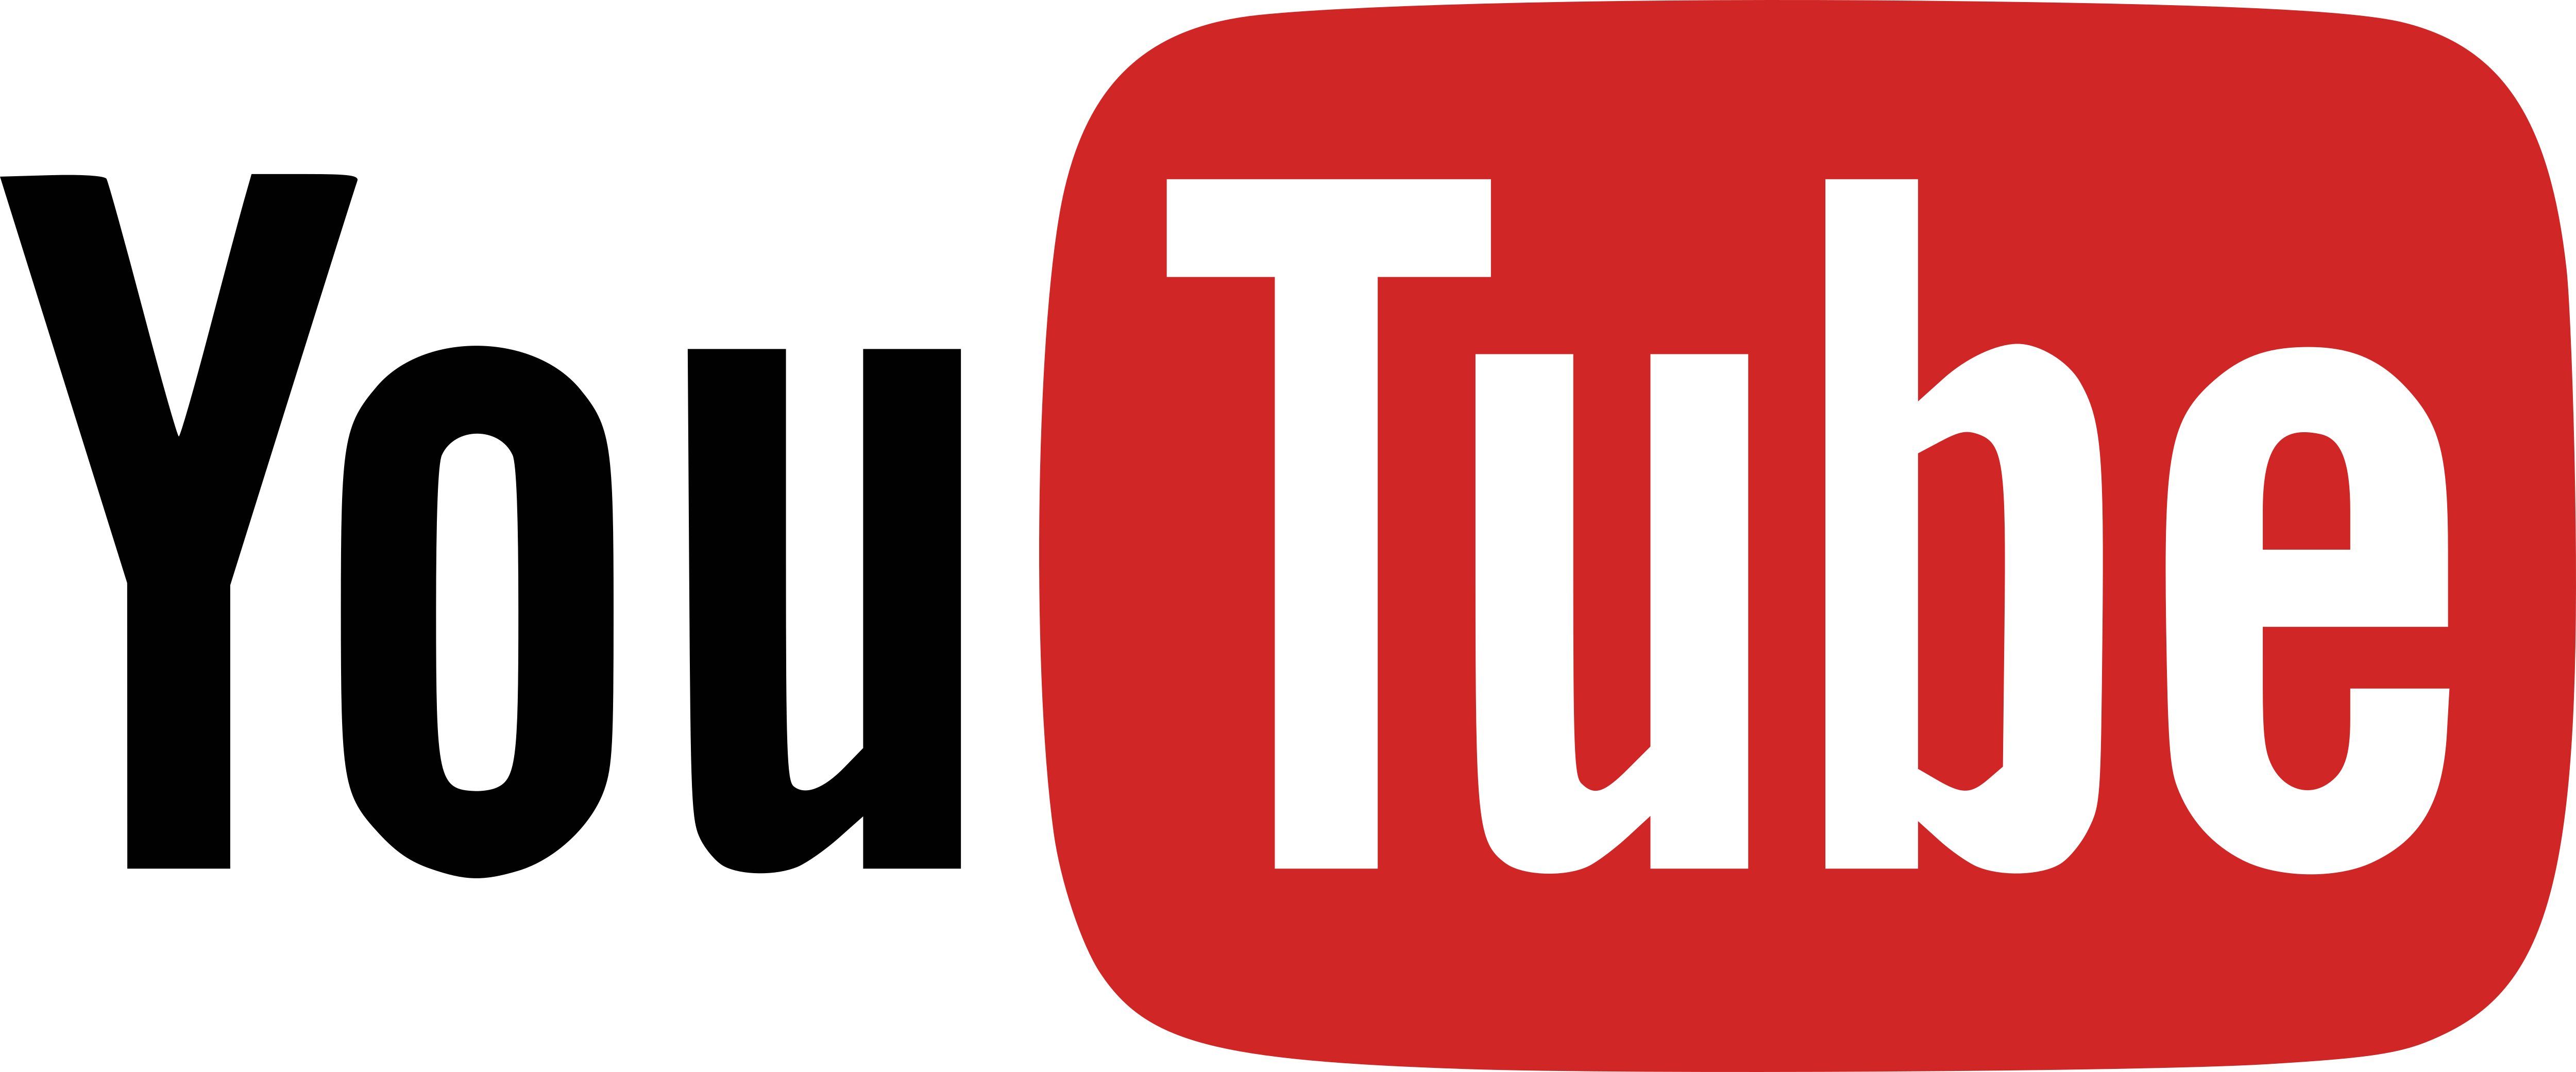 Youtube – Logos Download